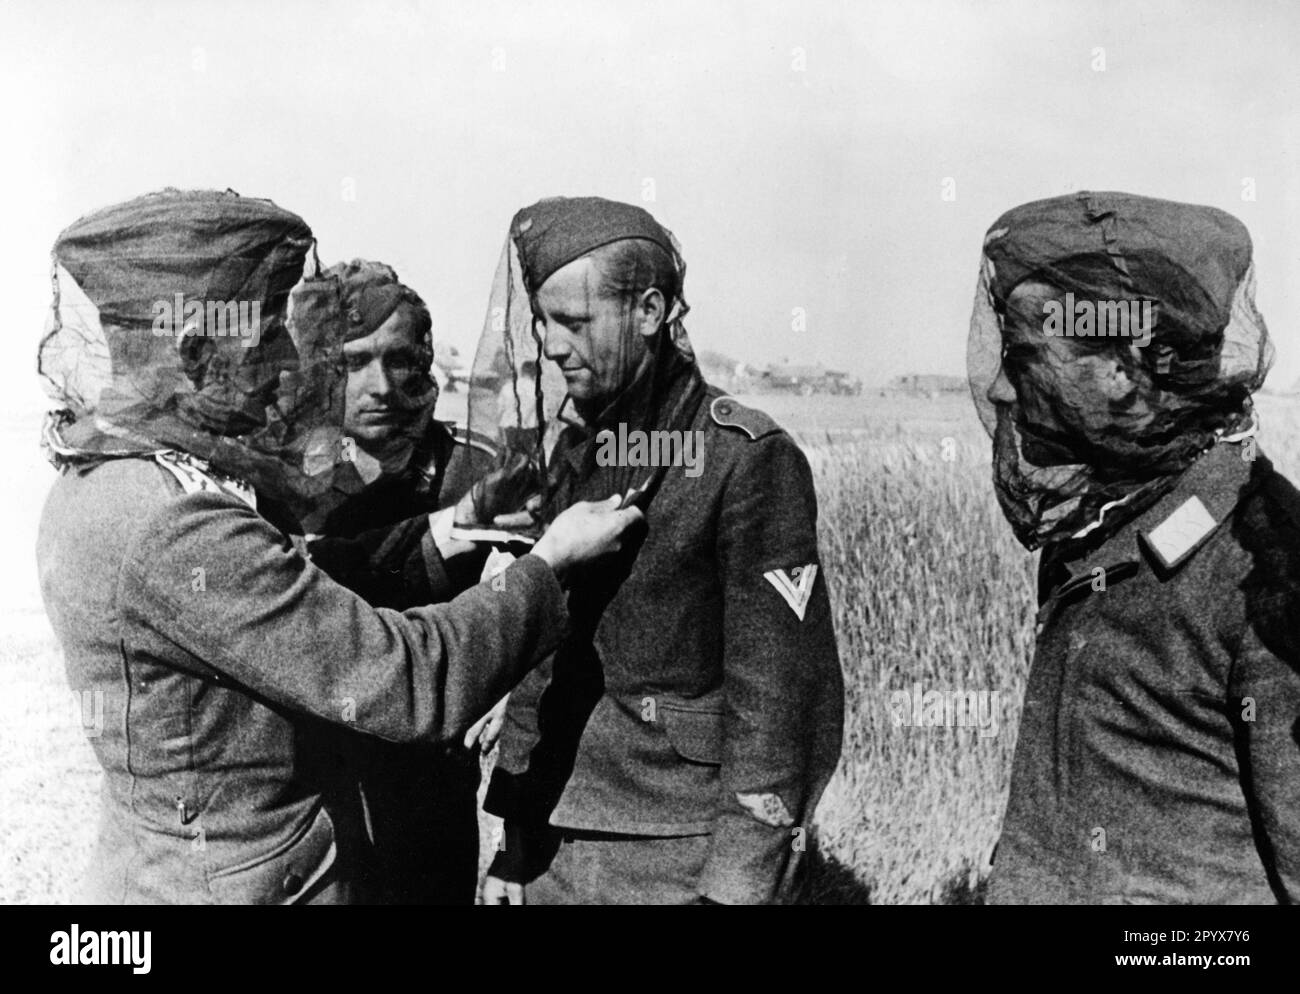 Deutsche Soldaten probieren Moskitonetze aus. Der Soldat in der Mitte trägt ein Aktivitätsabzeichen von Luftfahrttechnikern auf seinem Ärmel. Foto: Bütow. [Maschinelle Übersetzung] Stockfoto